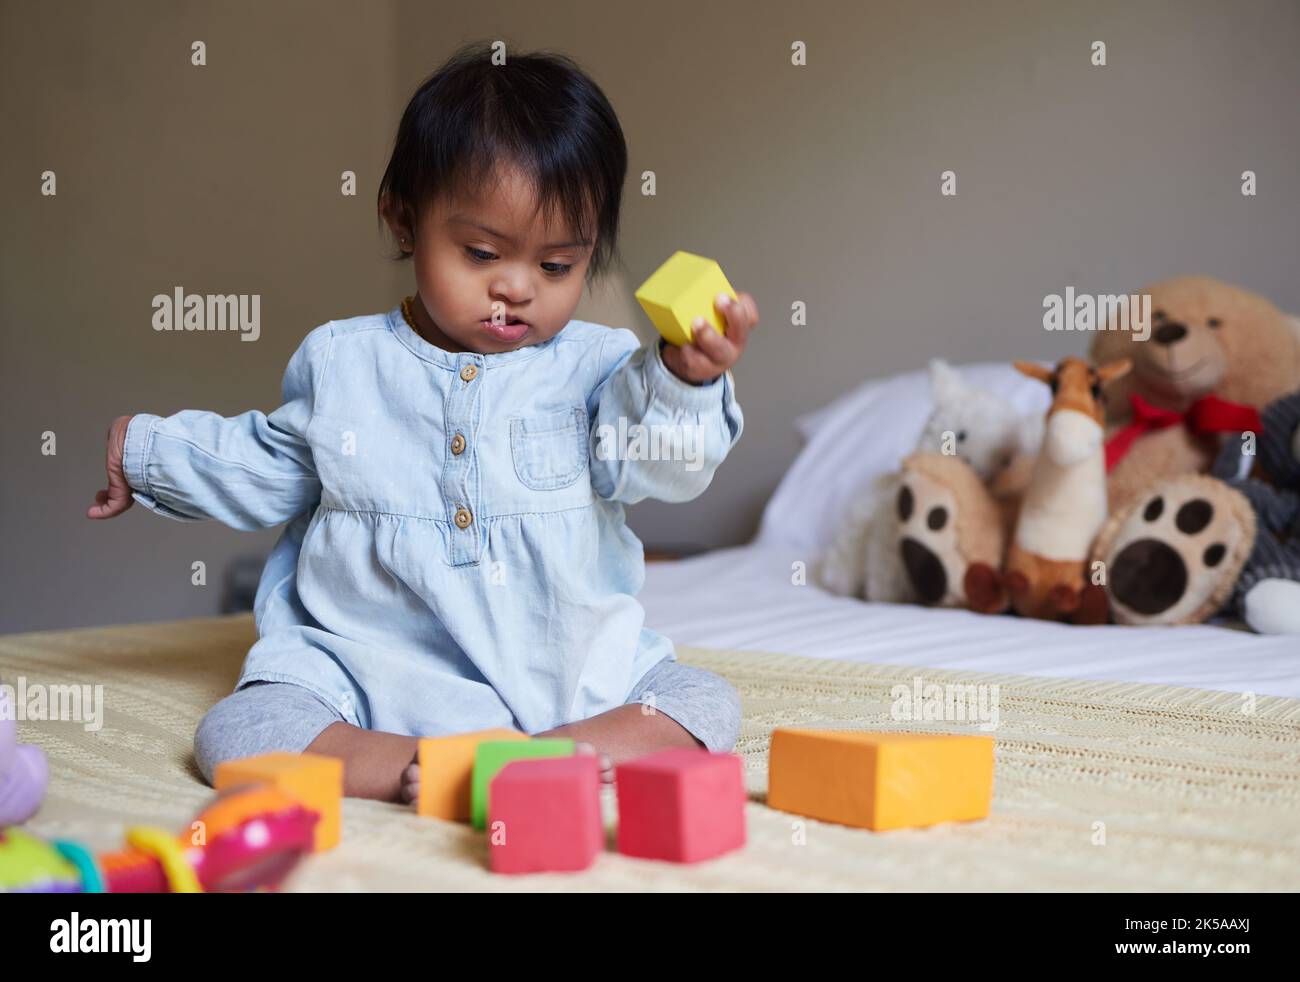 Sindrome di Down, cura del giorno e bambino sul letto con giocattoli, giocando con forme di colore e blocchi. Sviluppo del bambino, bisogni speciali e ragazza carina in camera da letto Foto Stock